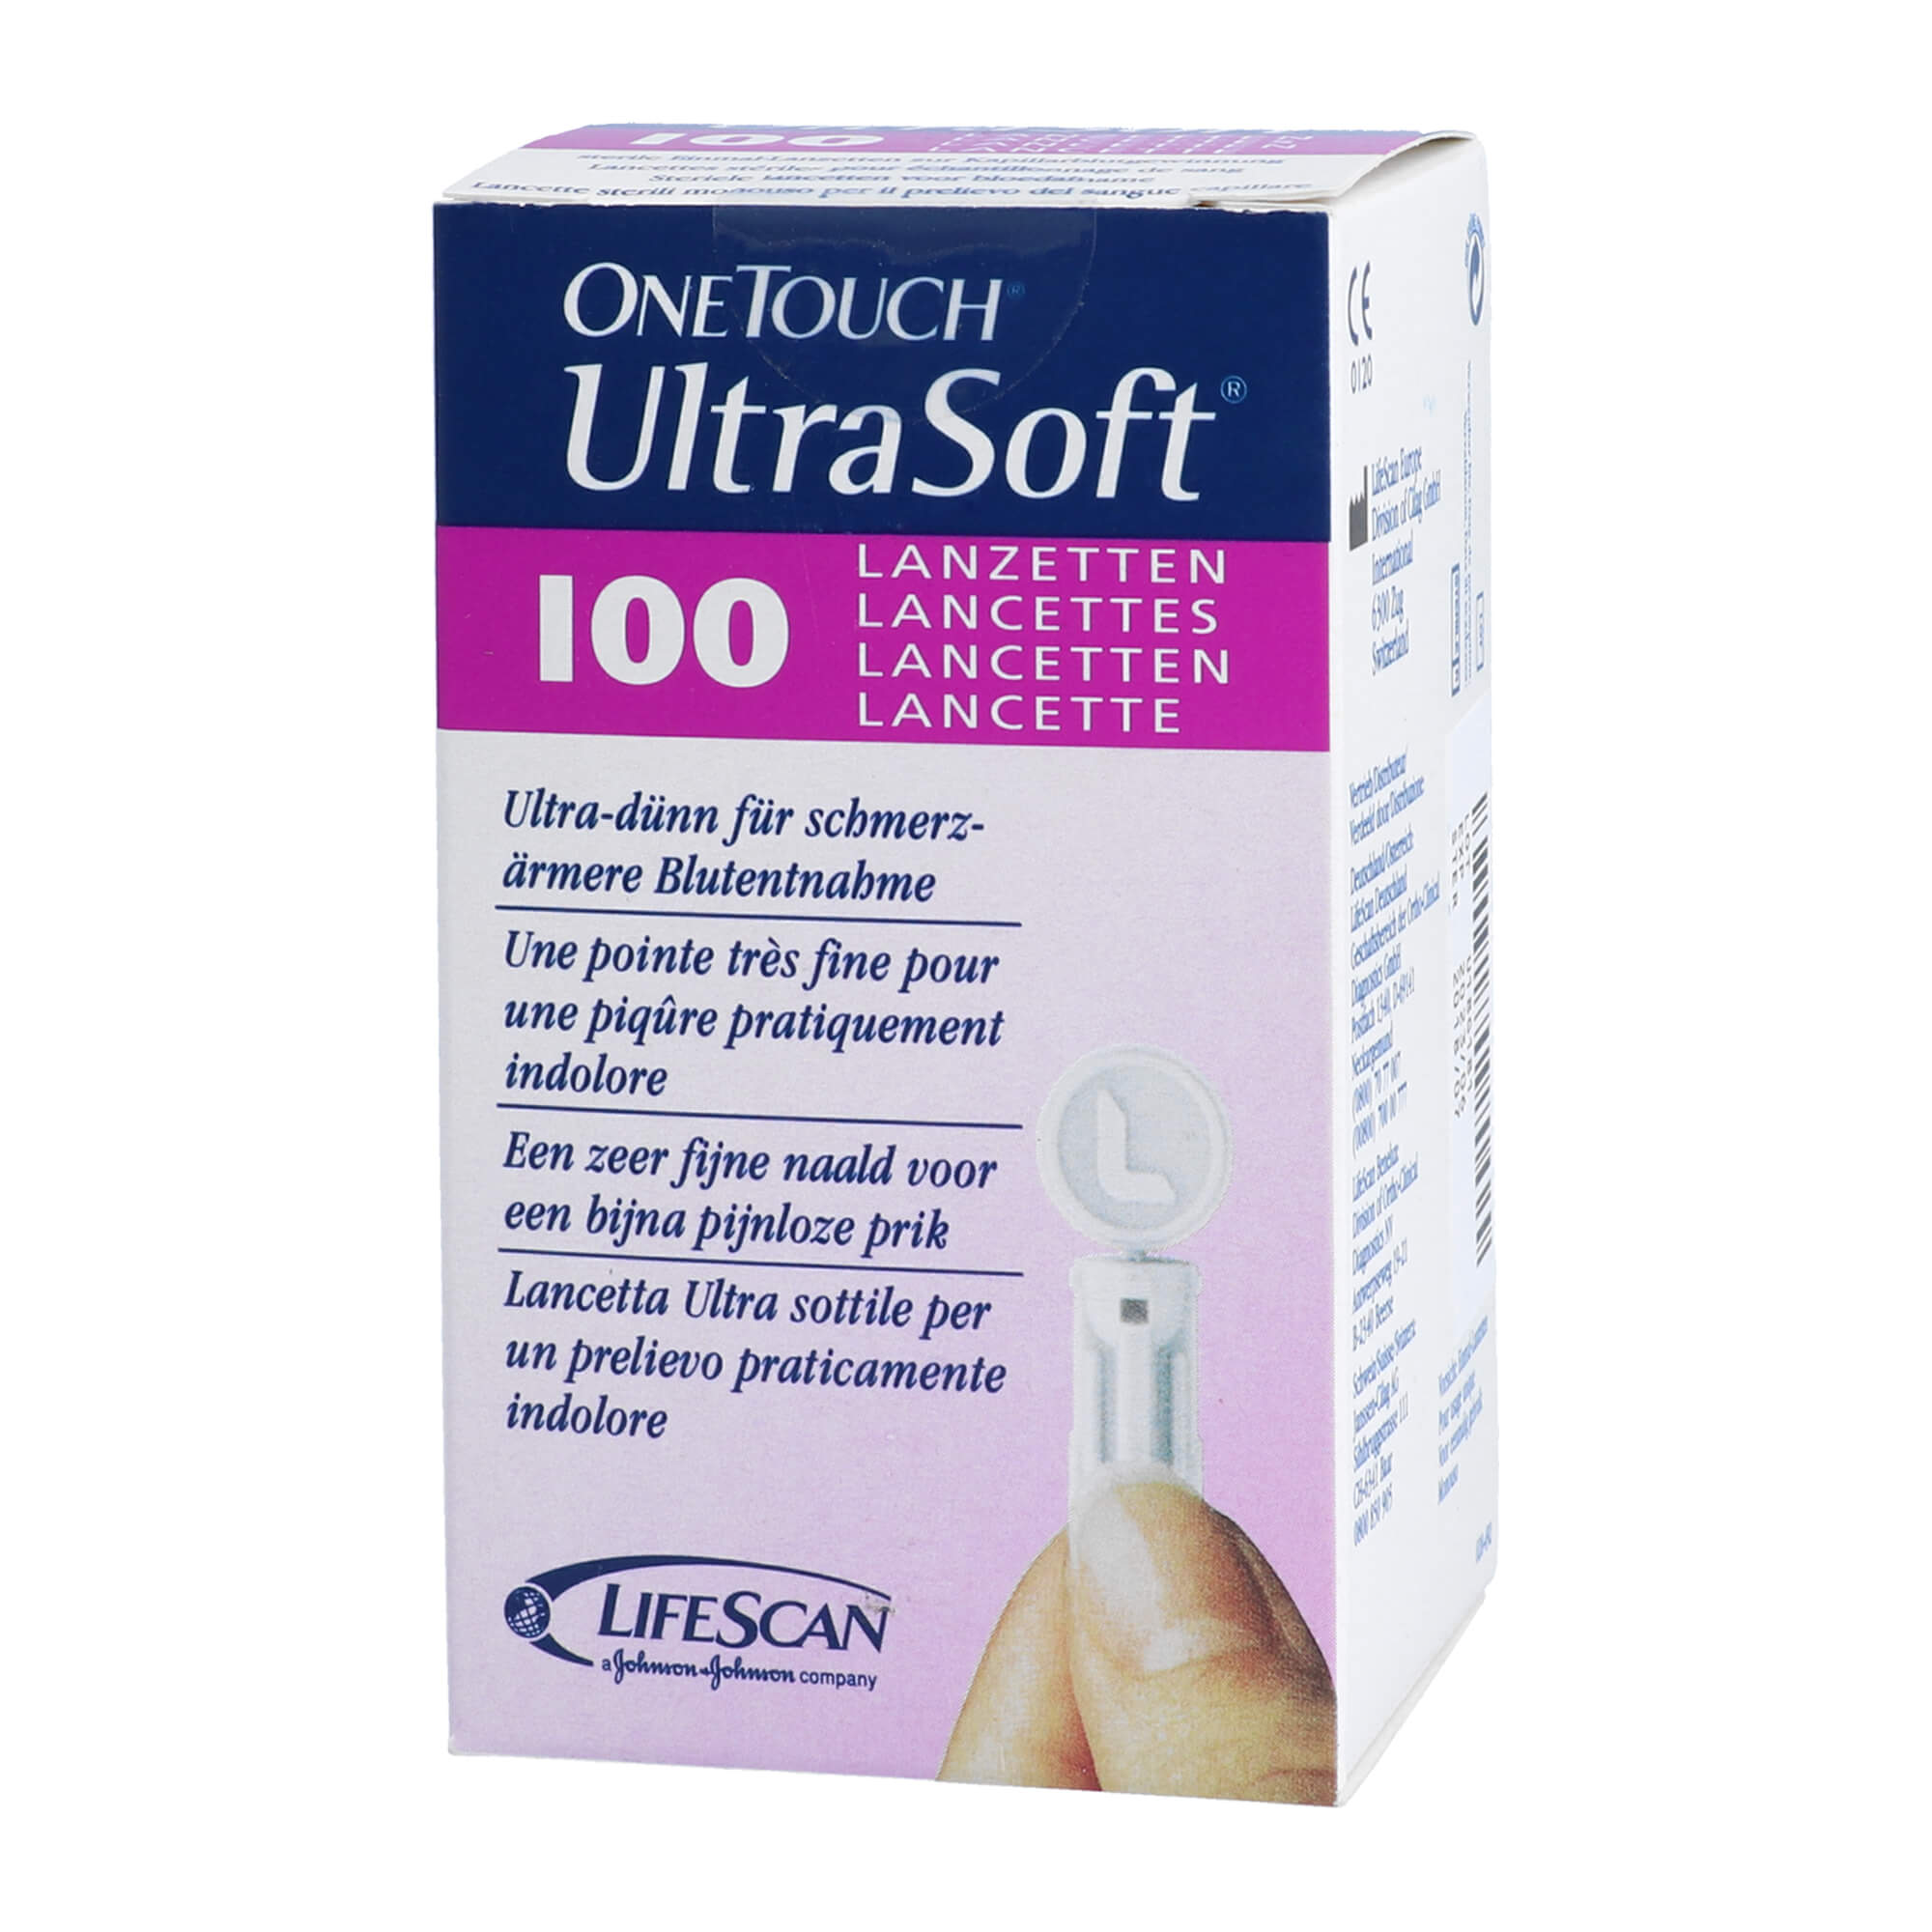 Ultra-dünn für schmerzarme Blutentnahme. Passend für das OneTouch Ultra Soft Lanzettengerät.